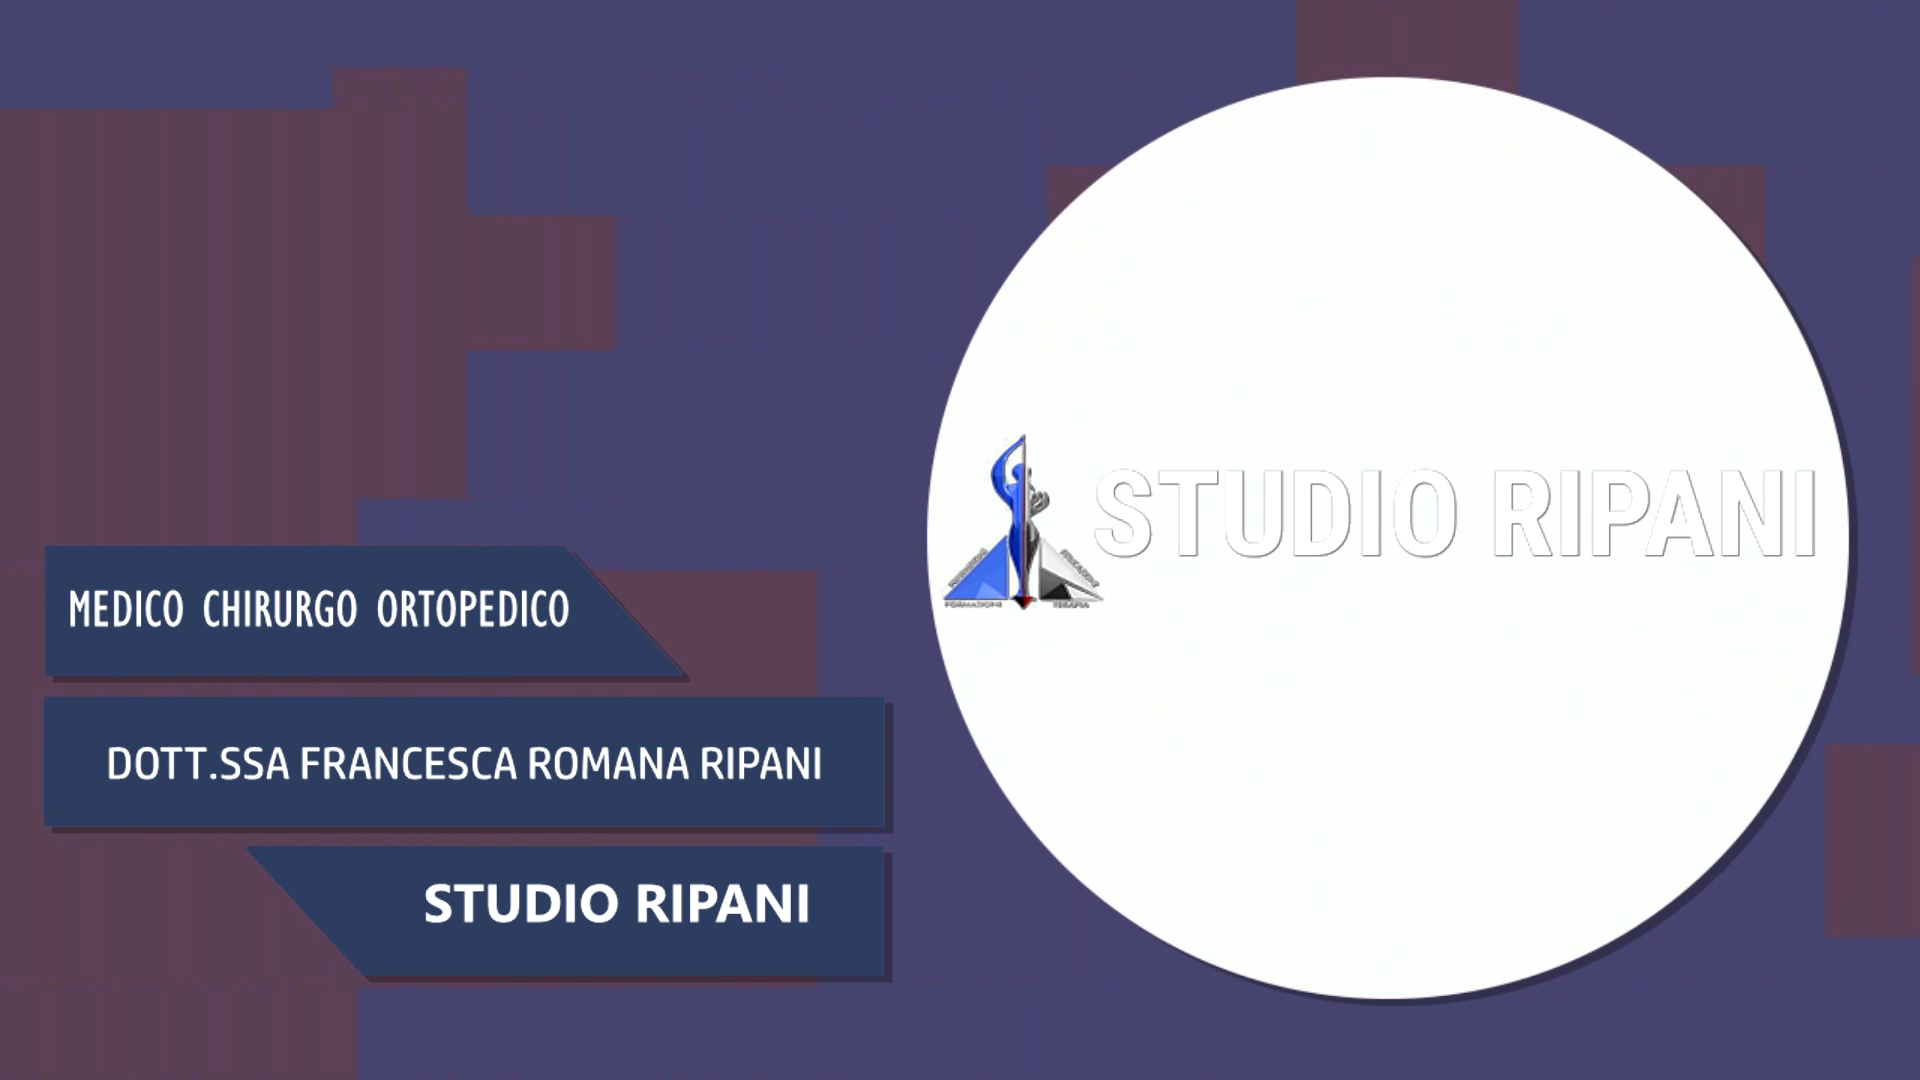 Intervista alla Dott.ssa Francesca Romana Ripani – Studio Ripani